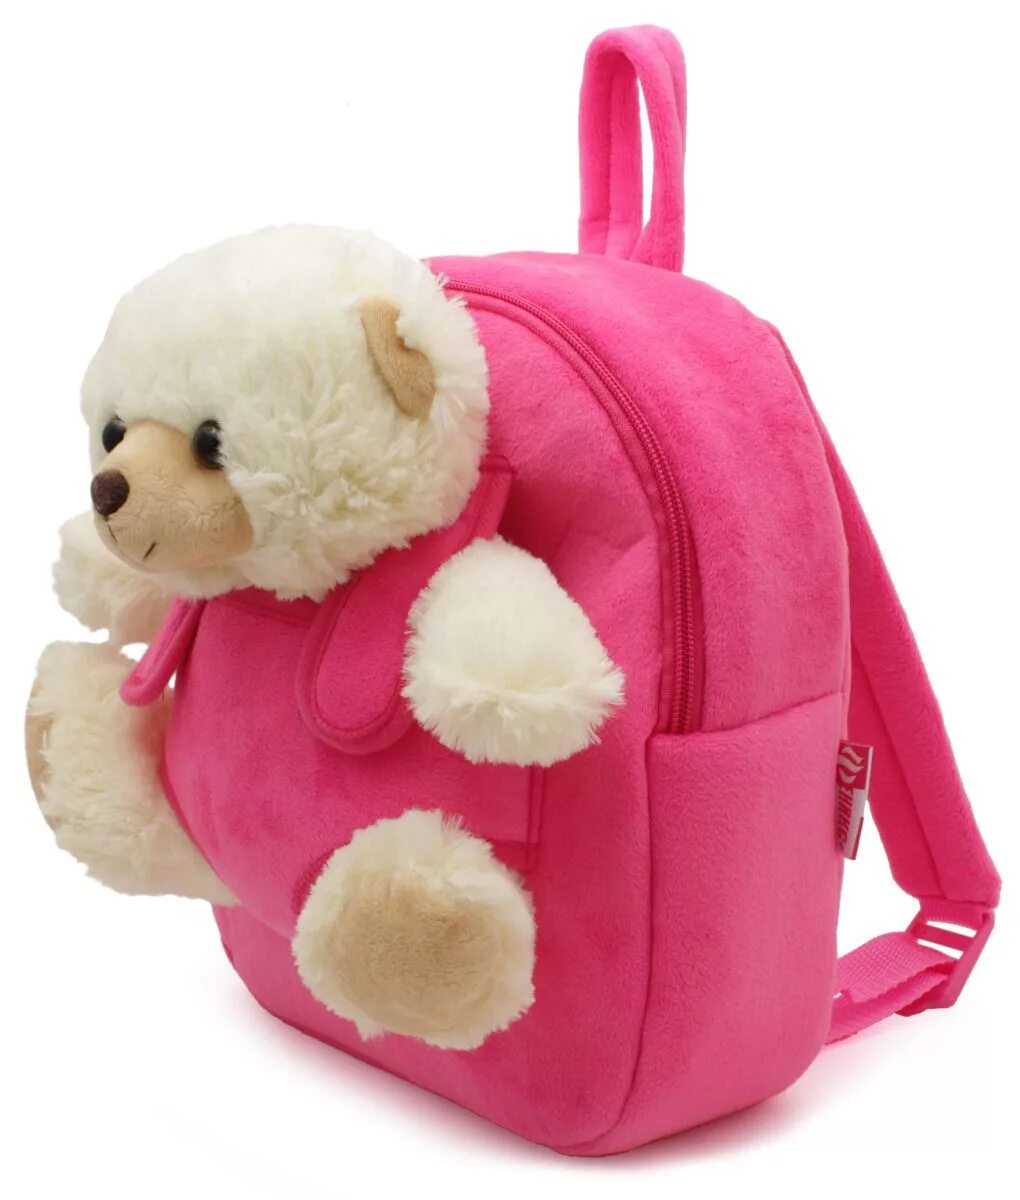 Рюкзак дошкольный Феникс+. Феникс+ рюкзак детский белый мишка. Рюкзак для девочек с игрушкой. Рюкзак детский для девочки.